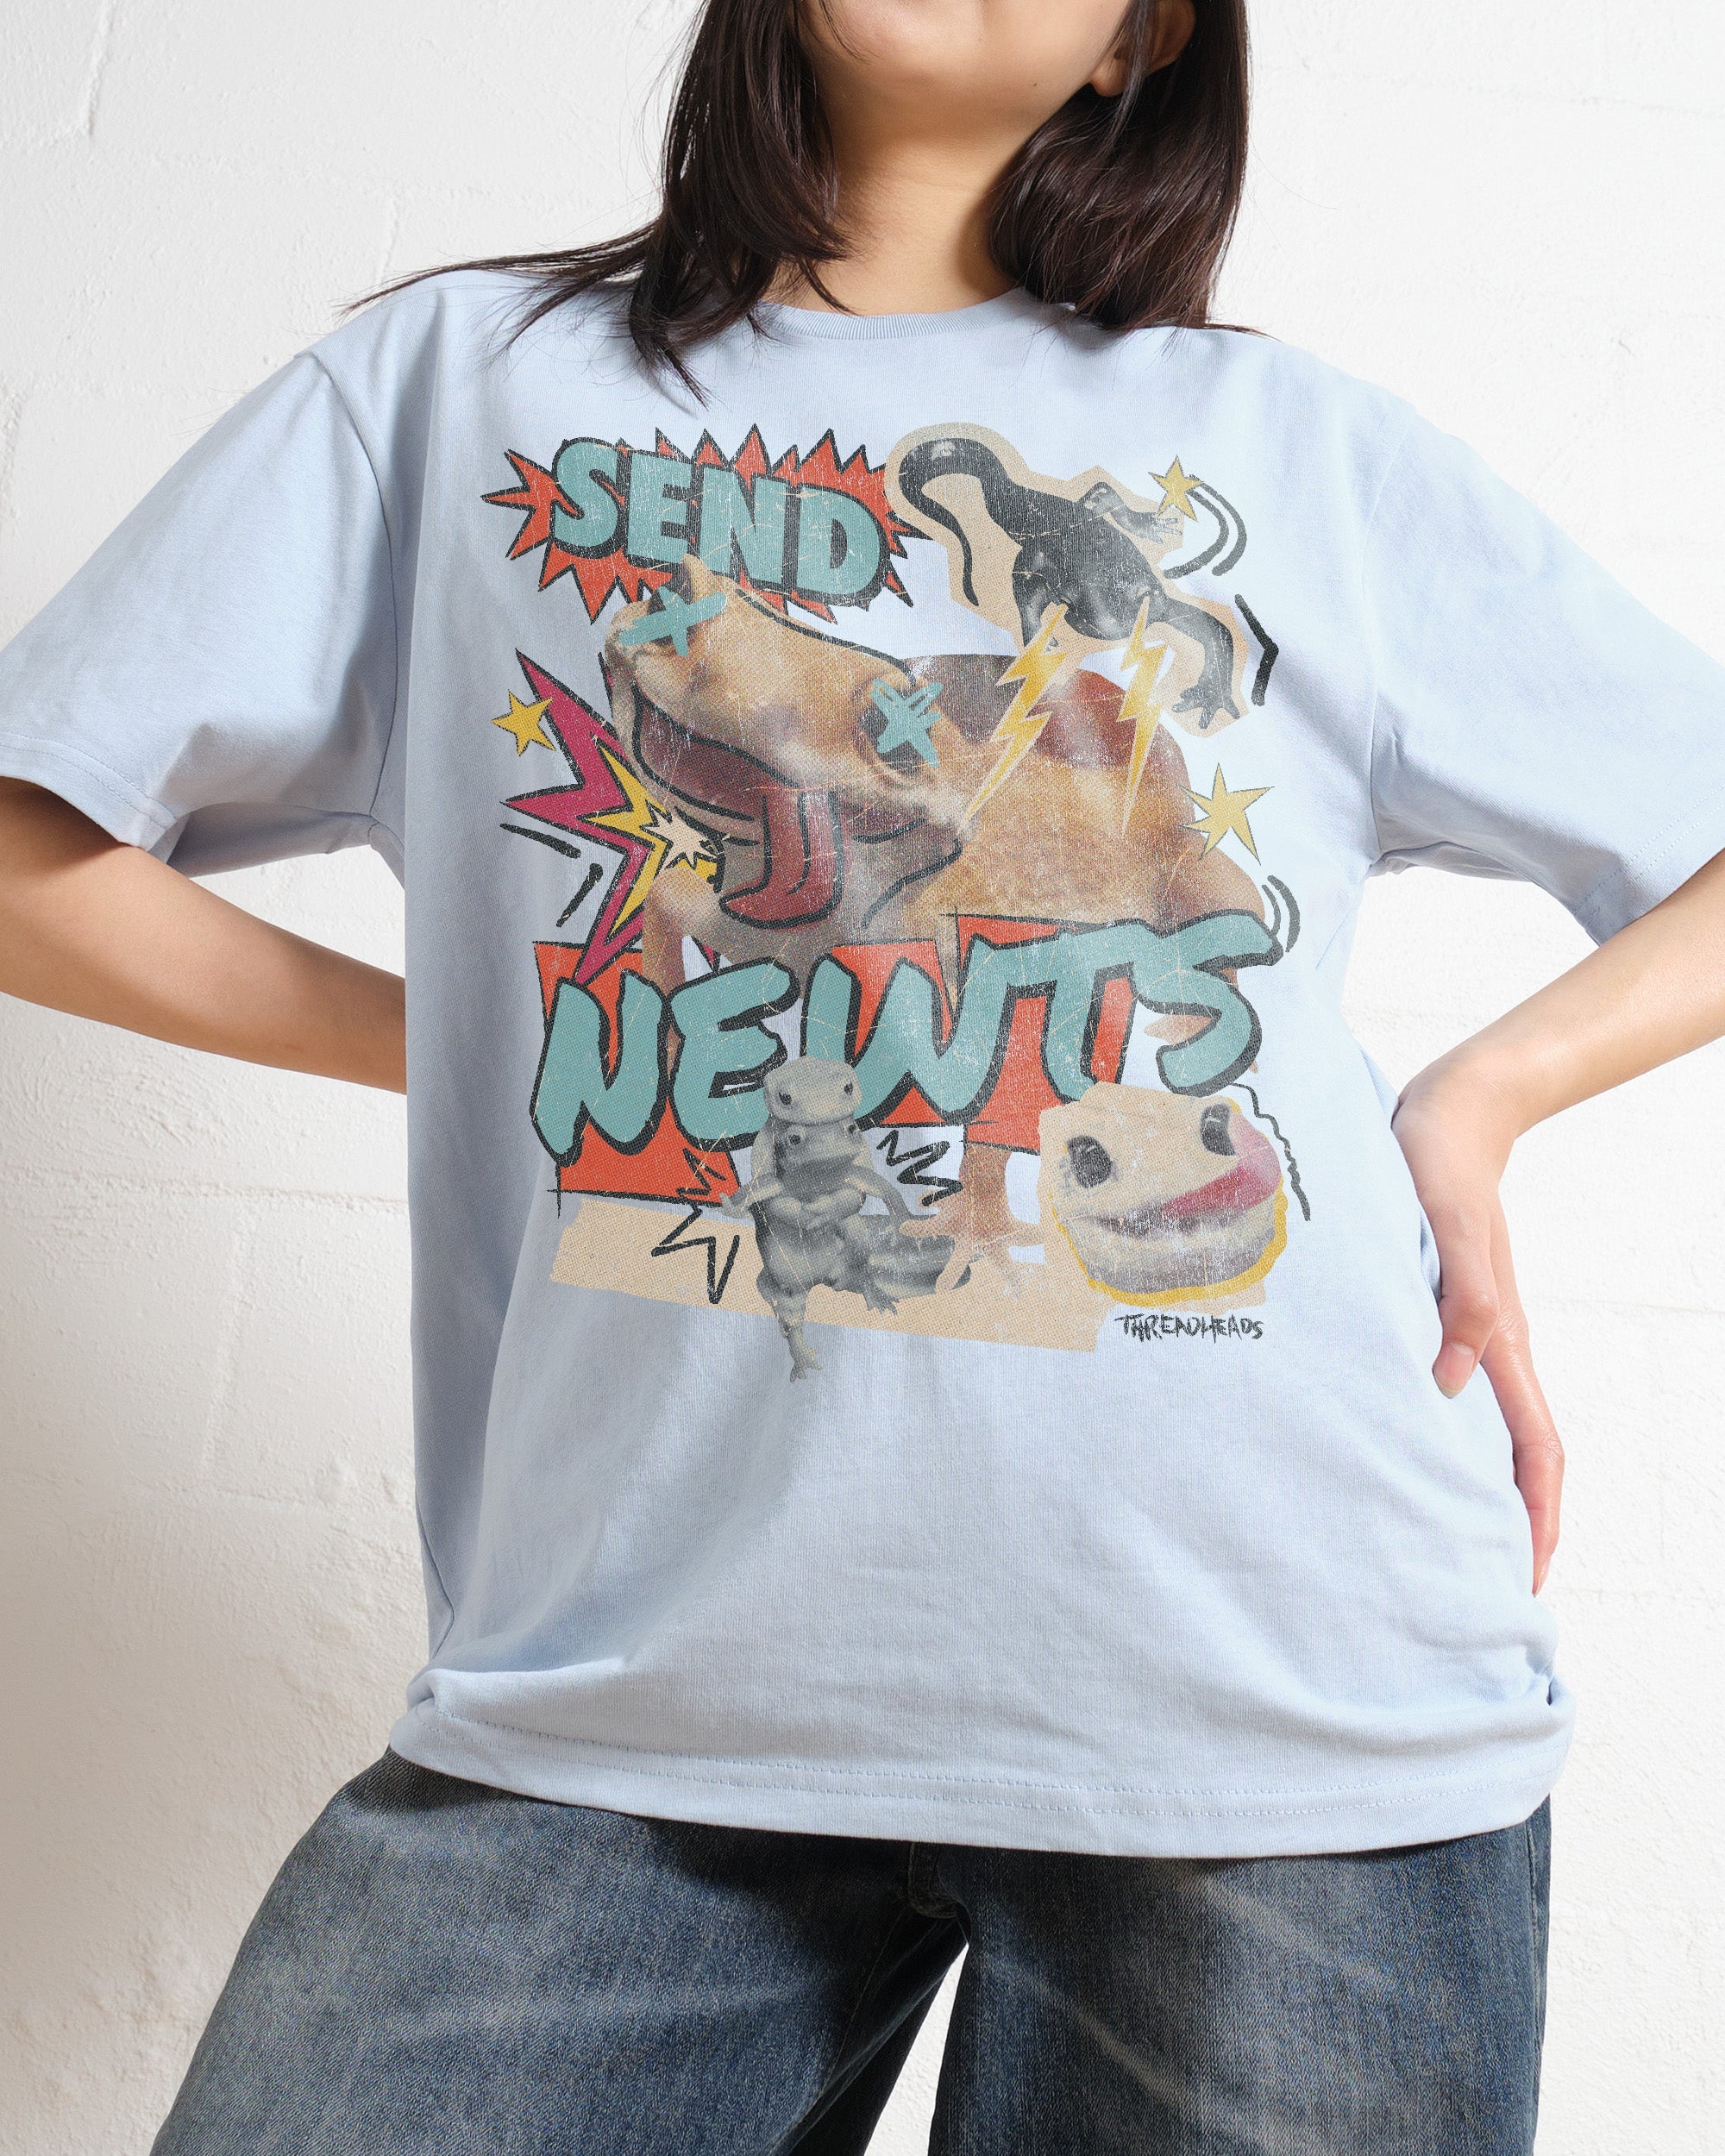 Send Newts T-Shirt Australia Online Pale Blue